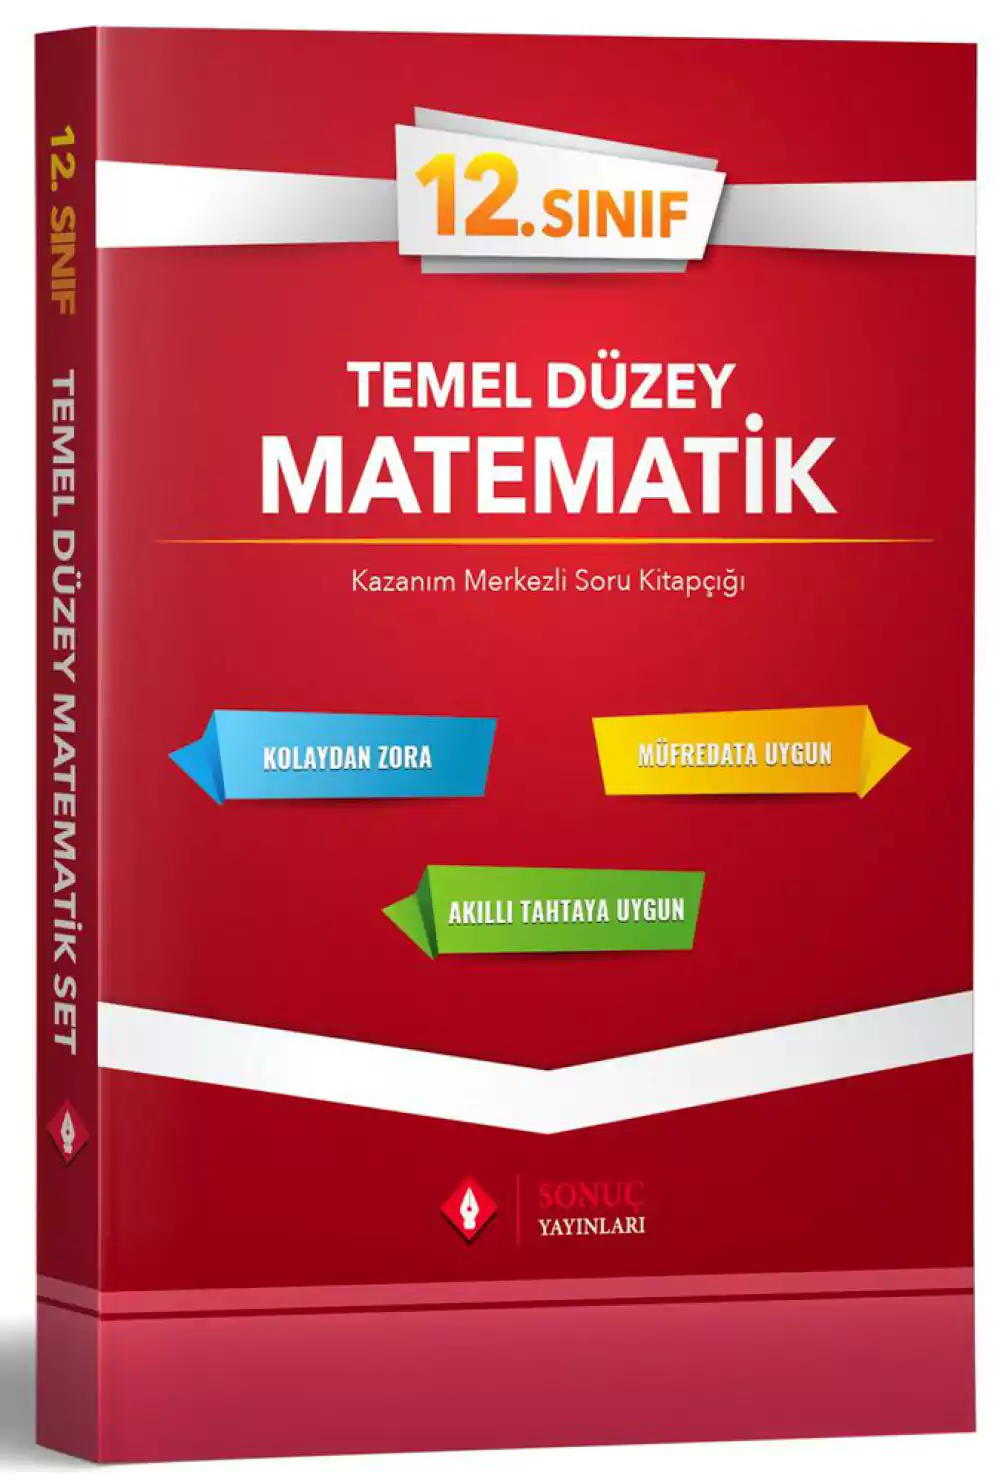 12.sınıf Temel Düzey Matematik Tek Kitap  Sonuç Yayınları